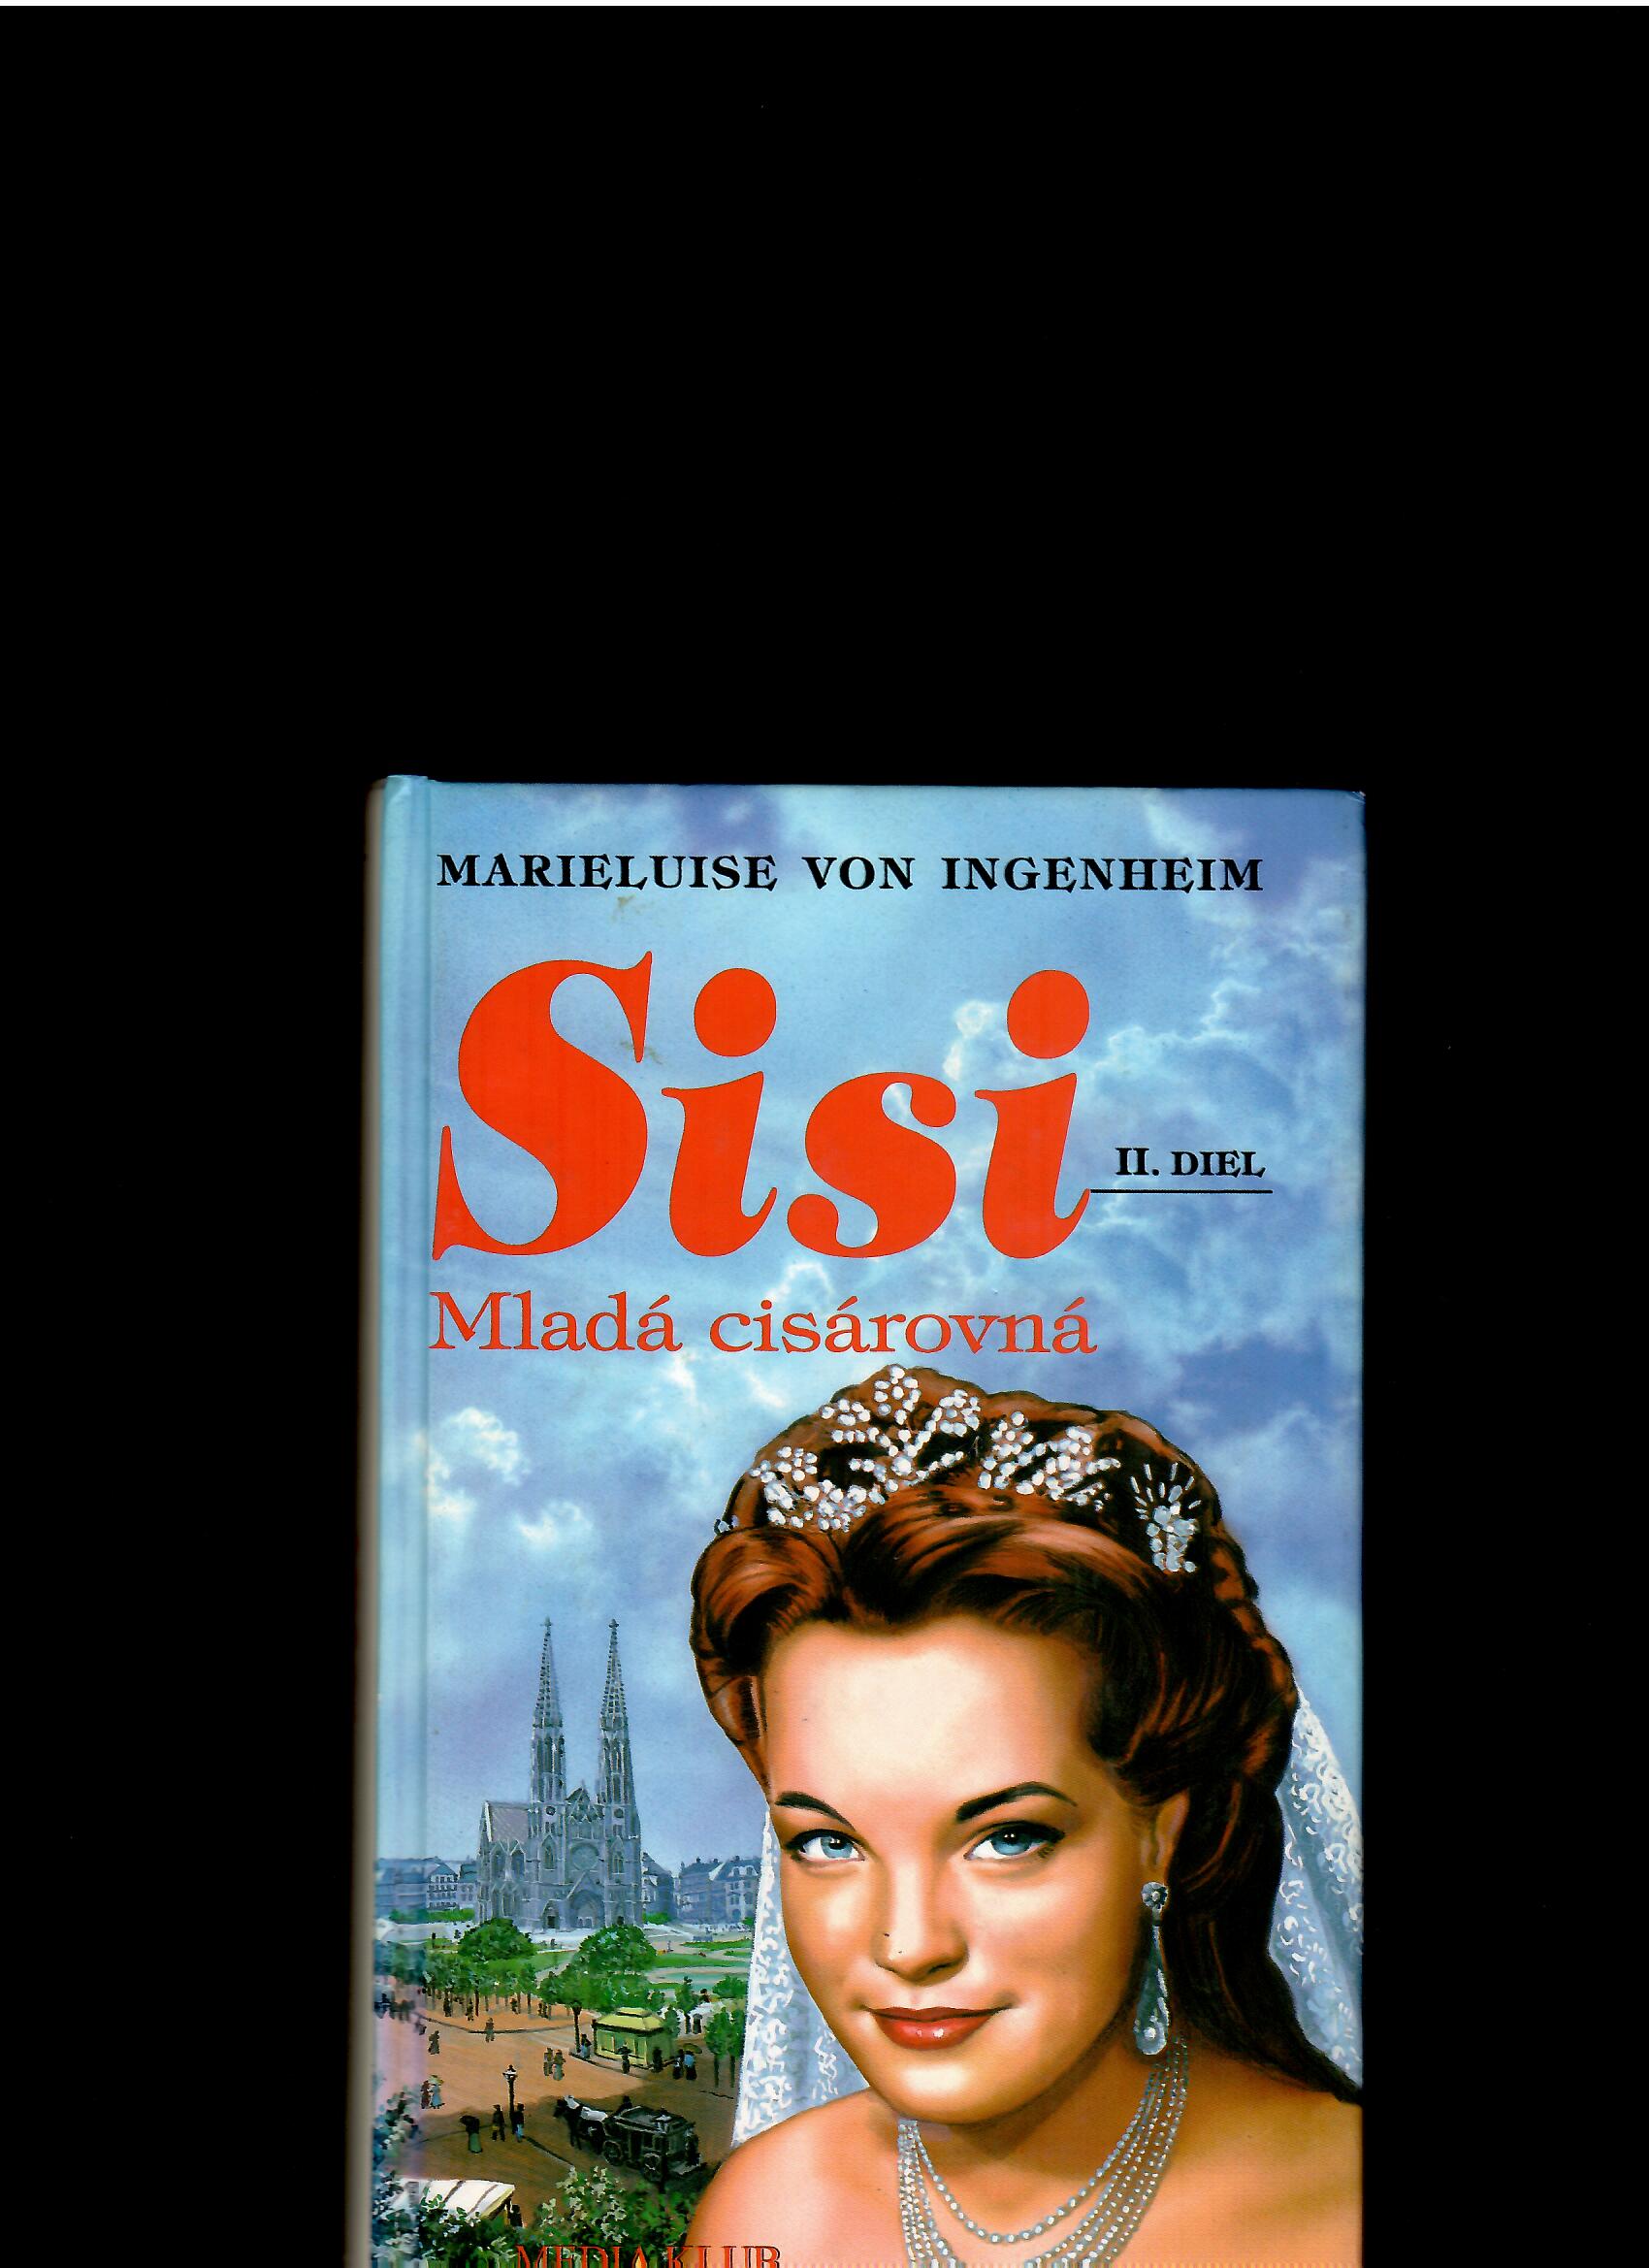 Marieluise von Ingenheim: Sisi. Mladá cisárovná. II. diel